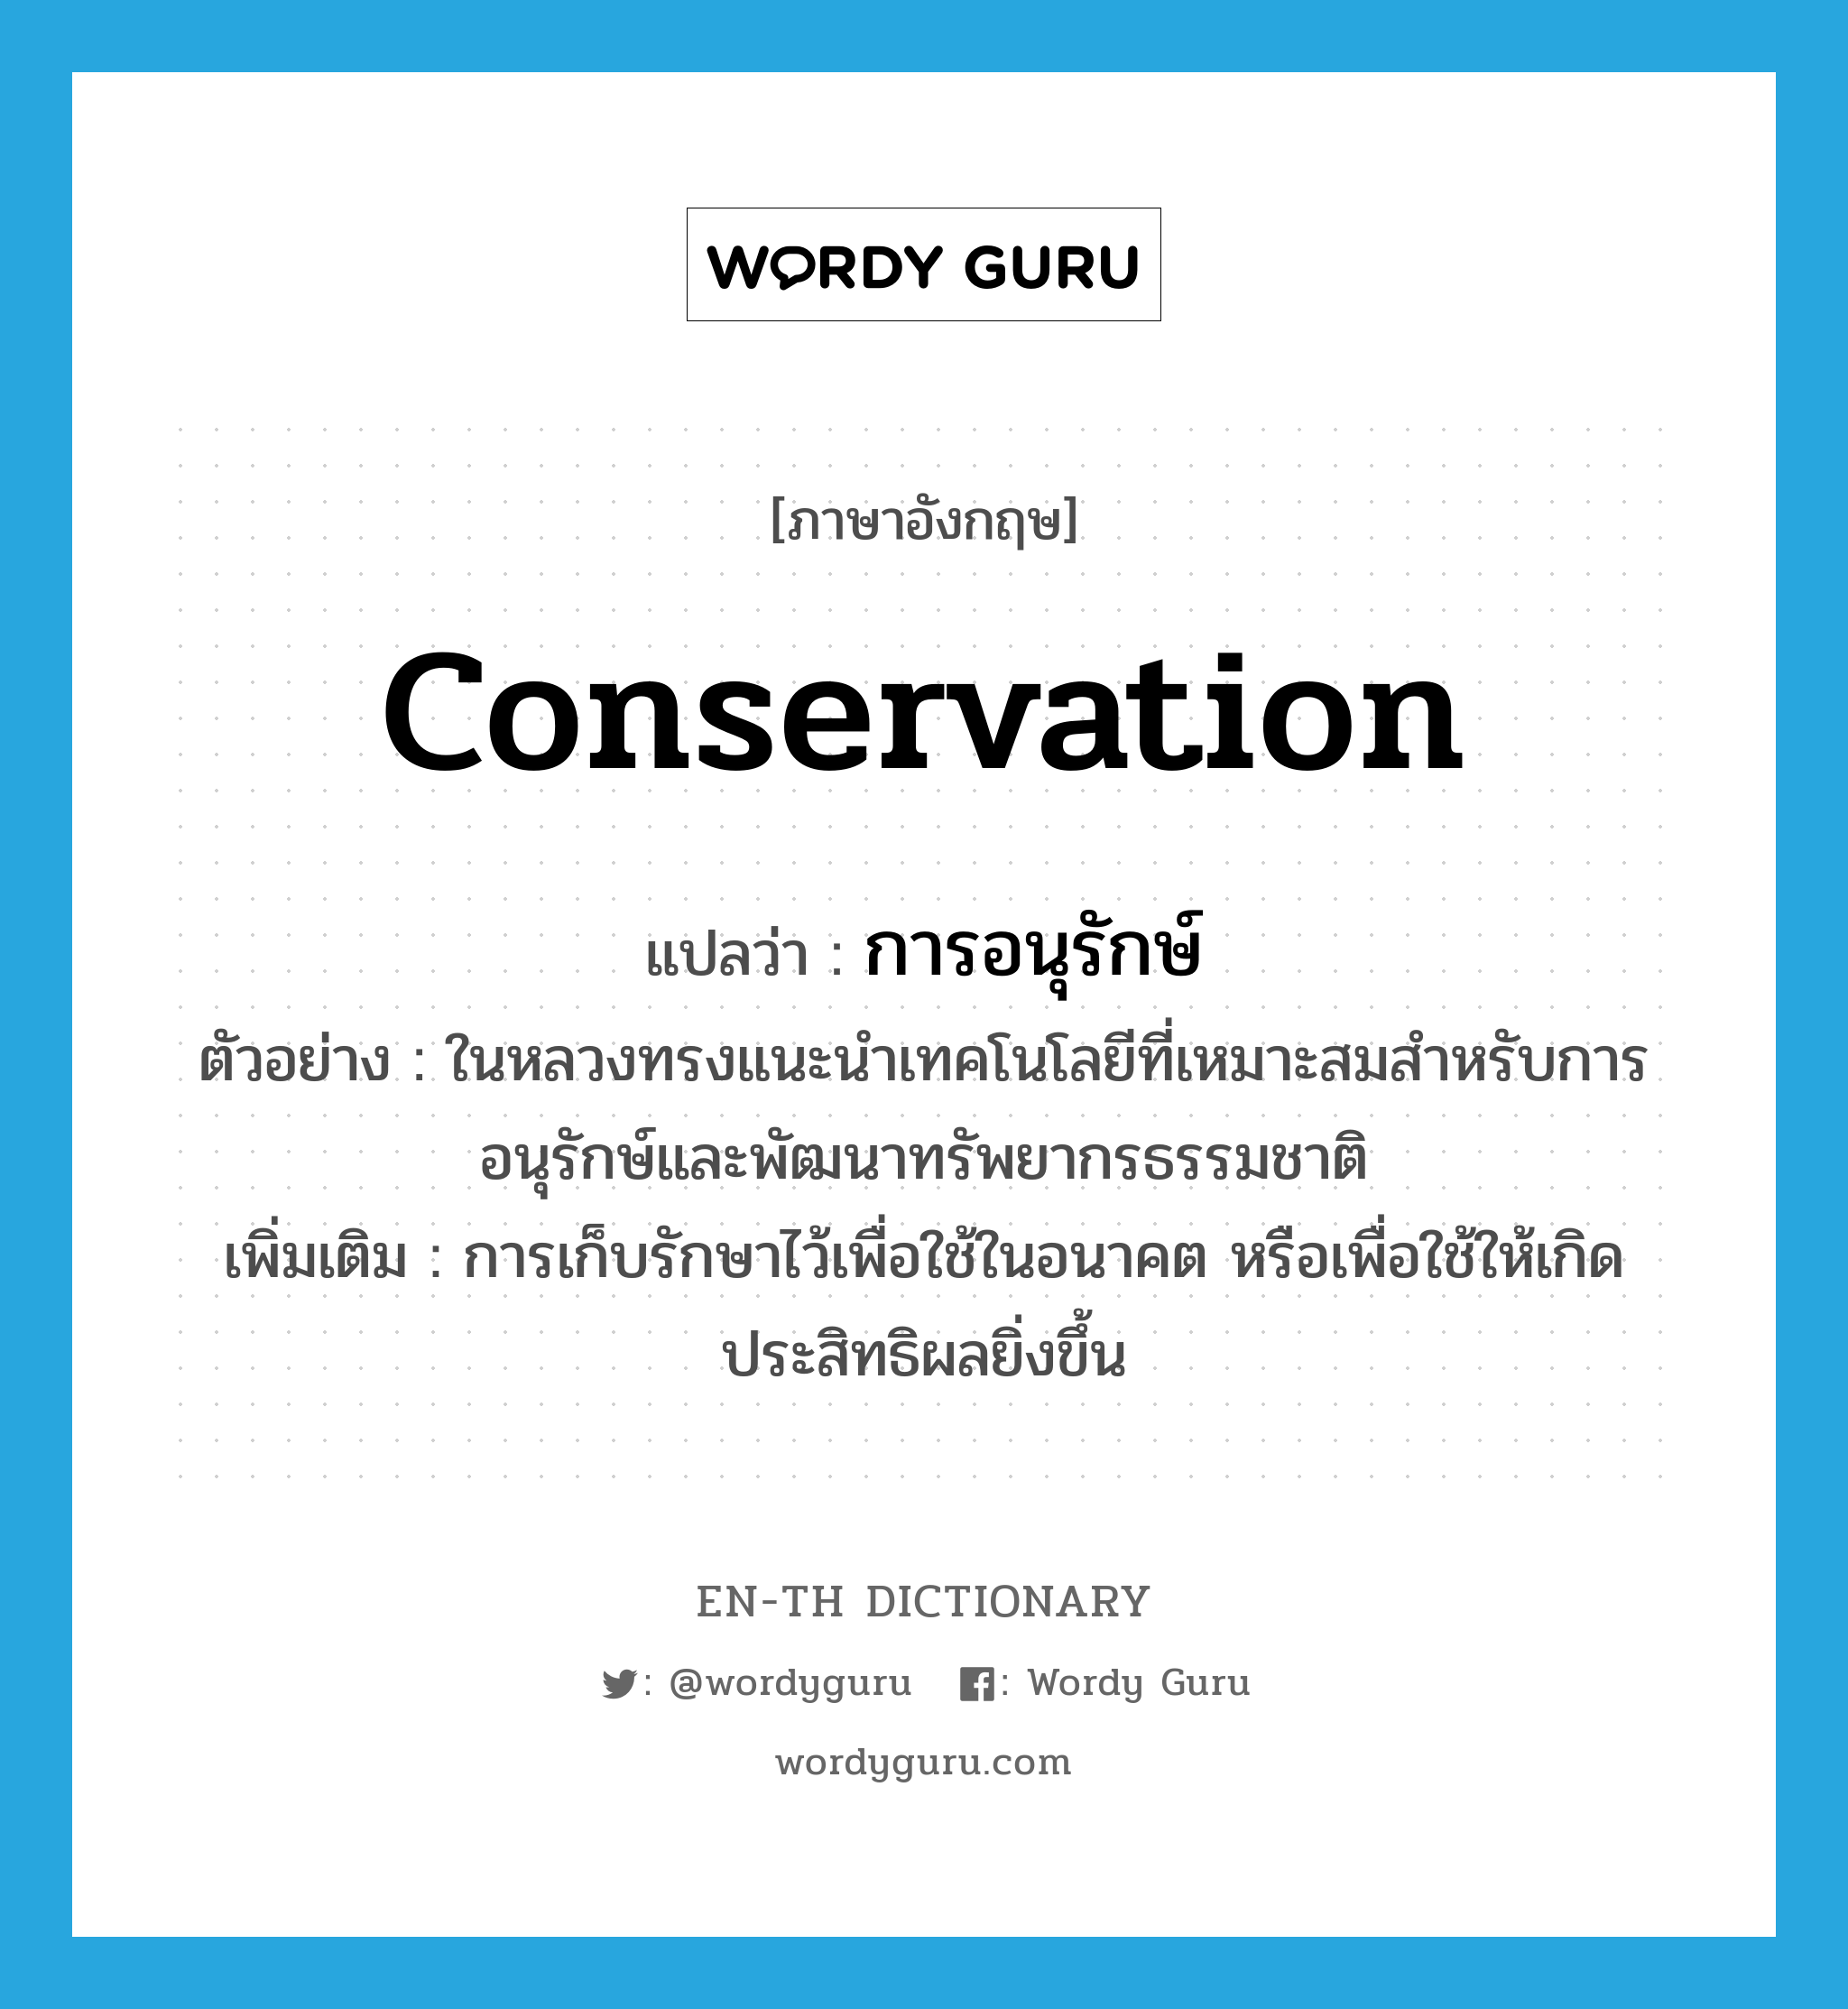 conservation แปลว่า?, คำศัพท์ภาษาอังกฤษ conservation แปลว่า การอนุรักษ์ ประเภท N ตัวอย่าง ในหลวงทรงแนะนำเทคโนโลยีที่เหมาะสมสำหรับการอนุรักษ์และพัฒนาทรัพยากรธรรมชาติ เพิ่มเติม การเก็บรักษาไว้เพื่อใช้ในอนาคต หรือเพื่อใช้ให้เกิดประสิทธิผลยิ่งขึ้น หมวด N